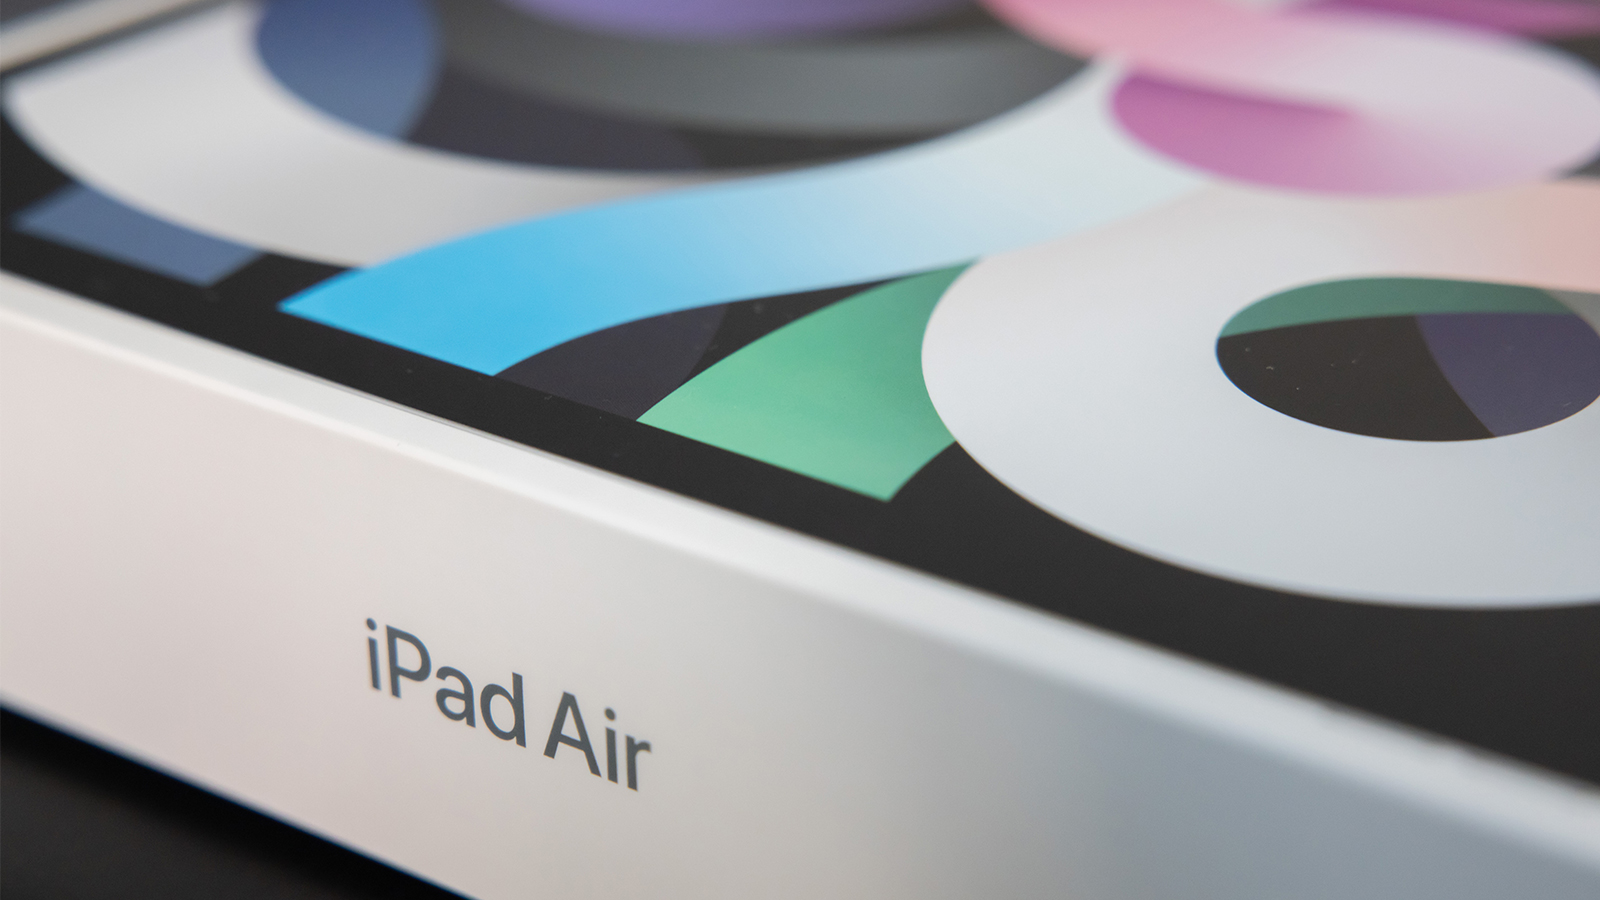 iPad_air